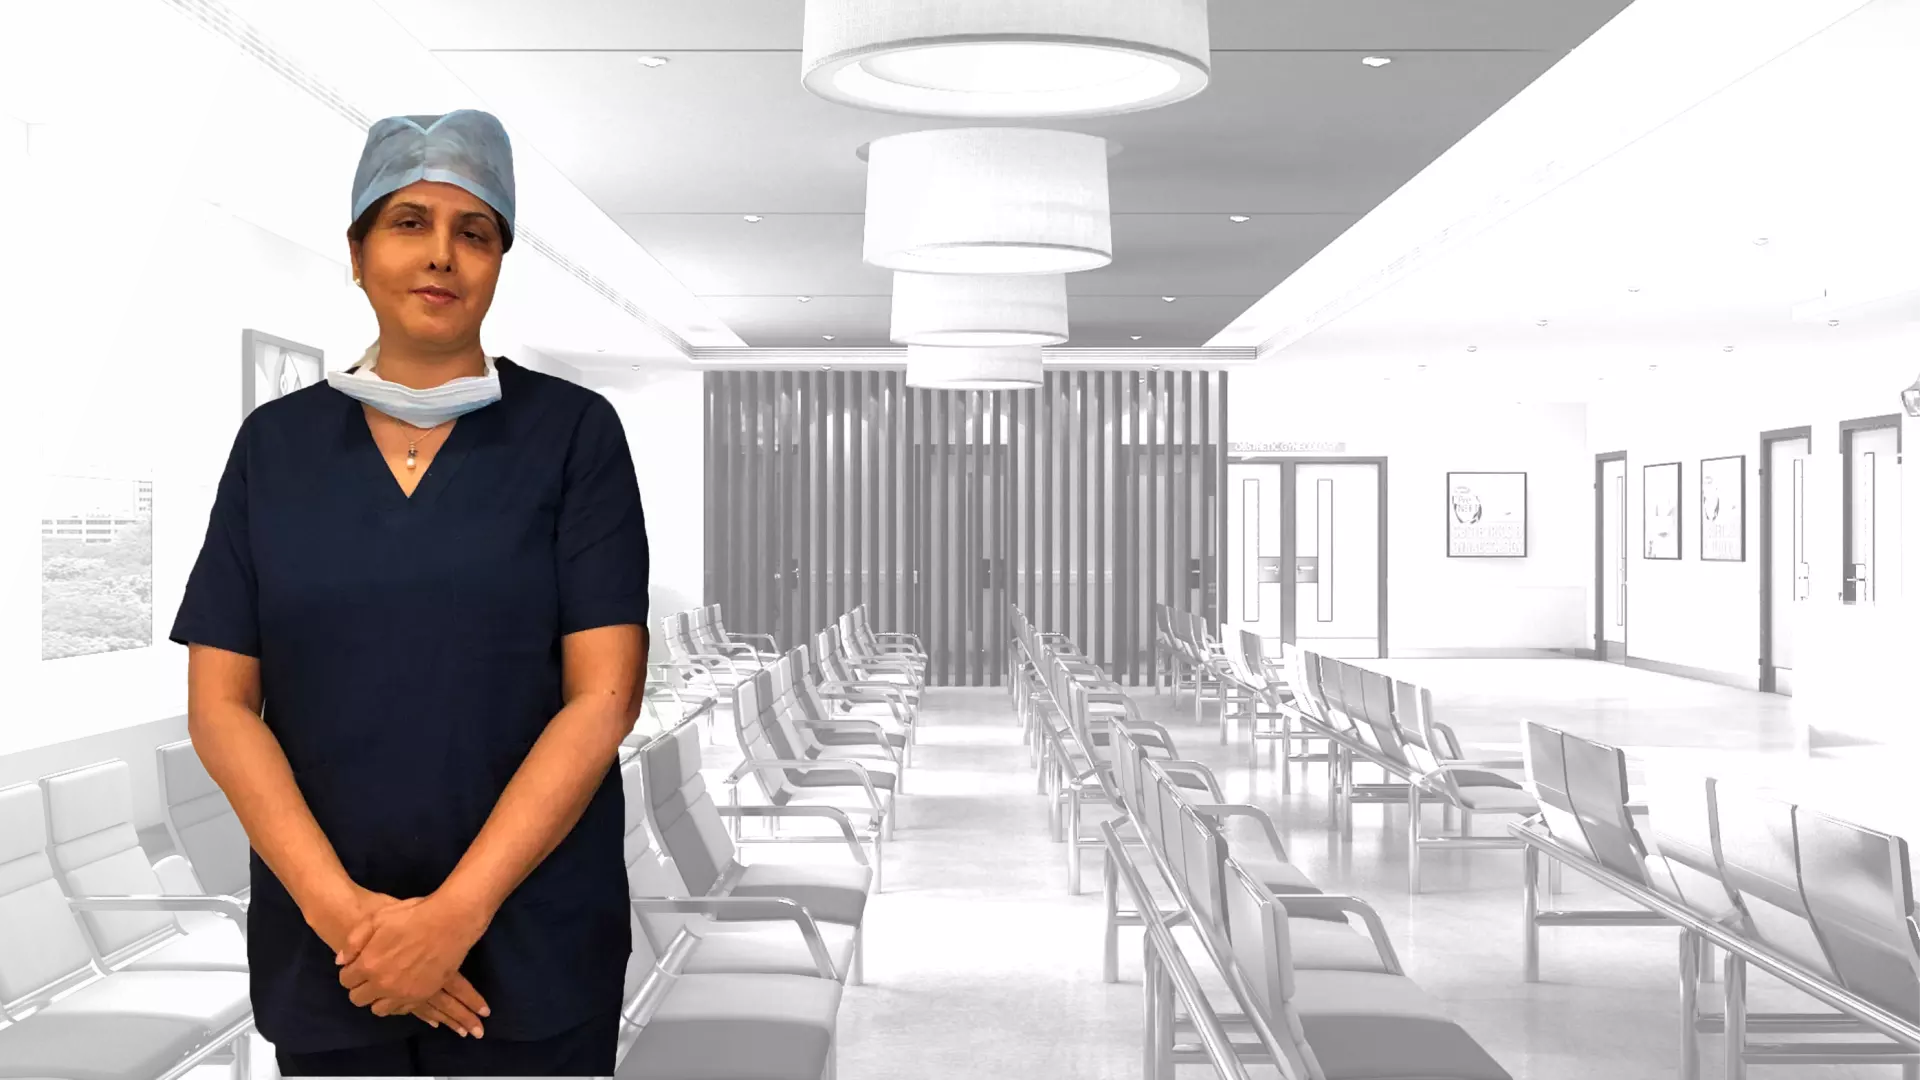 Dr Nutan Jain Best Gynaecologist in Uttar Pradesh, Best Laparoscopic Surgeon in Muzaffarnagar, Best IVF Specialist in India, Best Gynaecologist at Vardhman Hospital, Best Laparoscopic Surgeon in Uttar Pradesh, Best Laparoscopic Surgeon in India, Best Surgeon for Laparoscopic Hysterectomy in Uttar Pradesh India